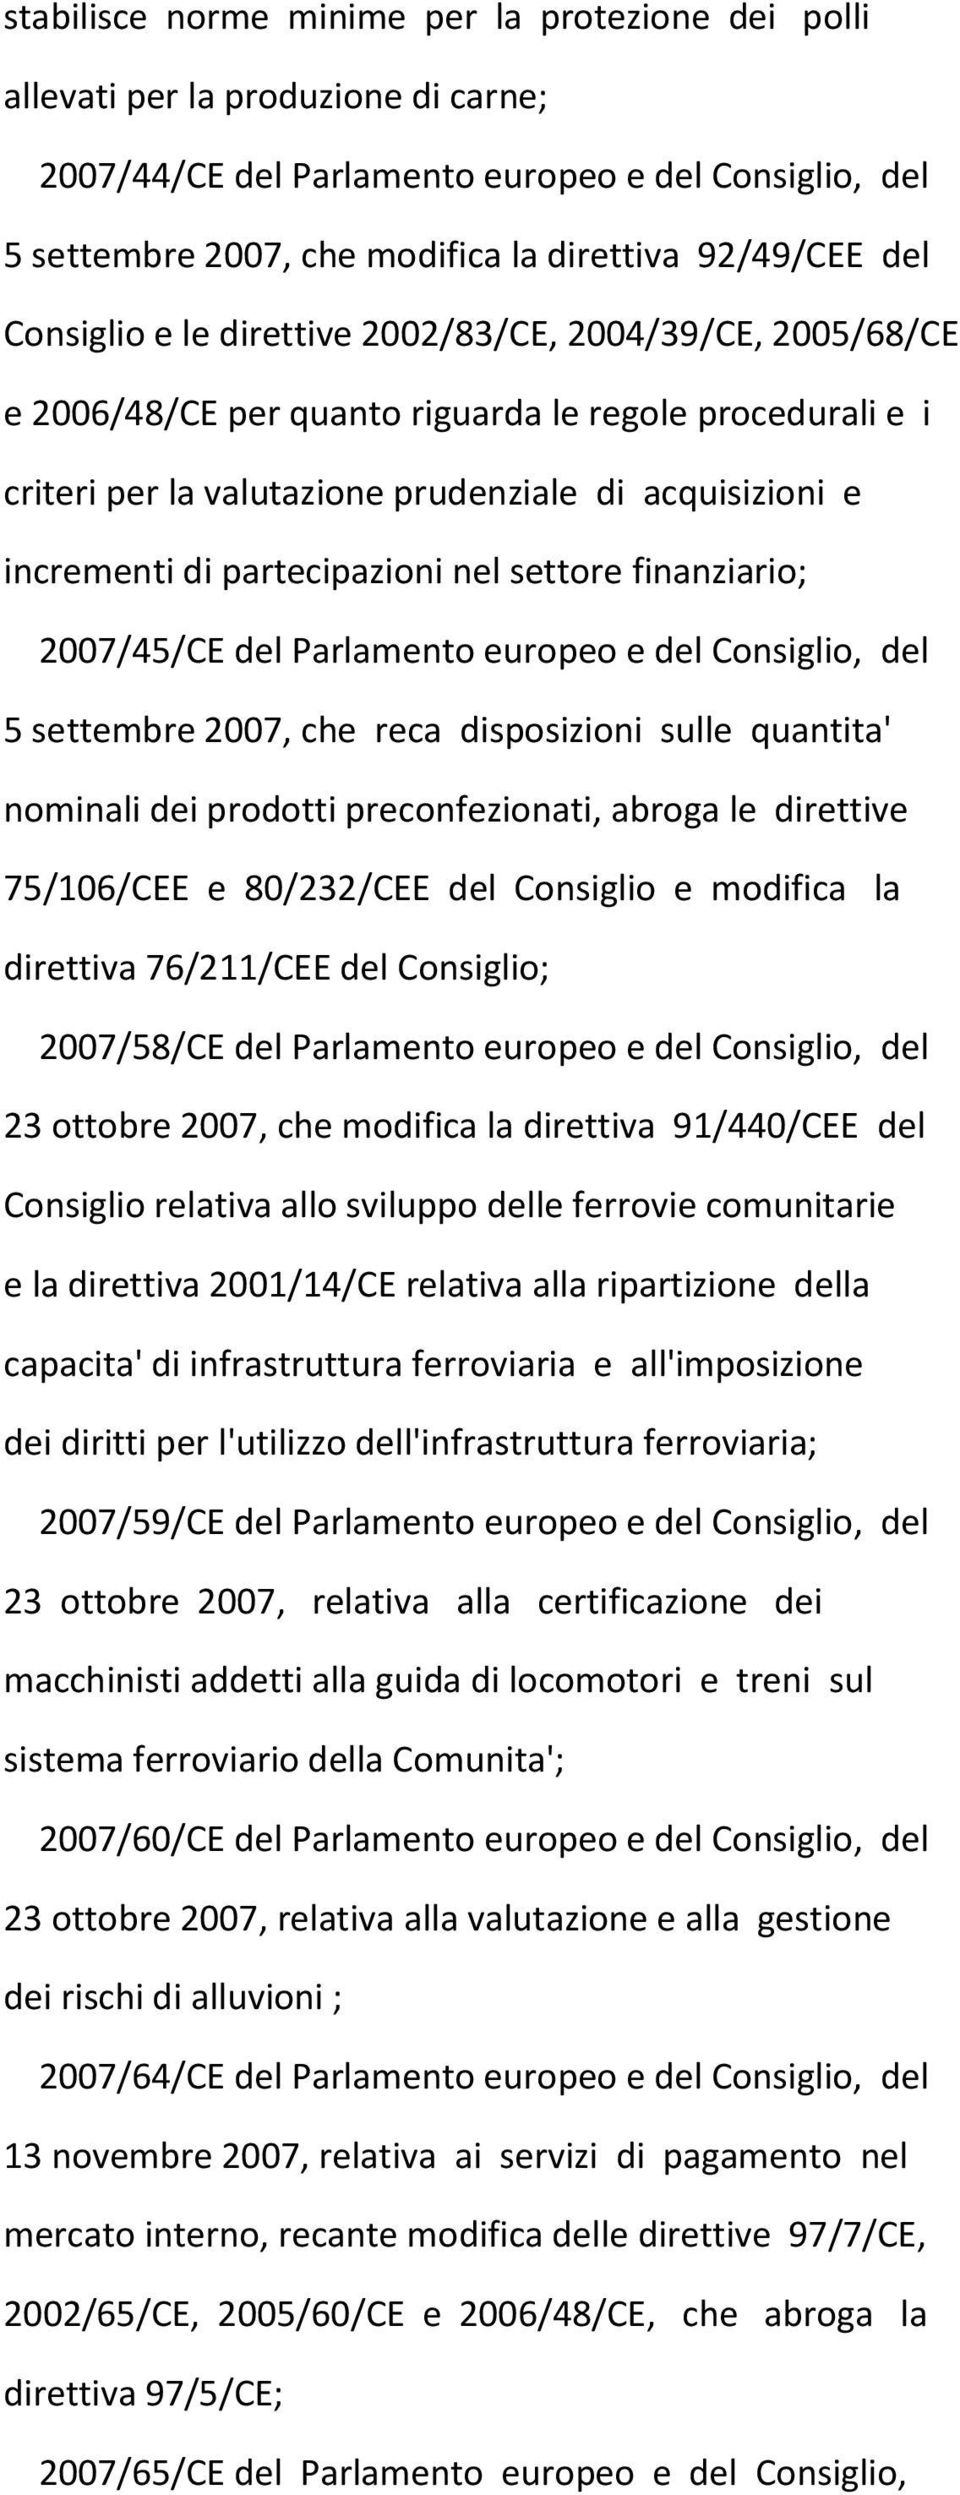 partecipazioni nel settore finanziario; 2007/45/CE del Parlamento europeo e del Consiglio, del 5 settembre 2007, che reca disposizioni sulle quantita' nominali dei prodotti preconfezionati, abroga le